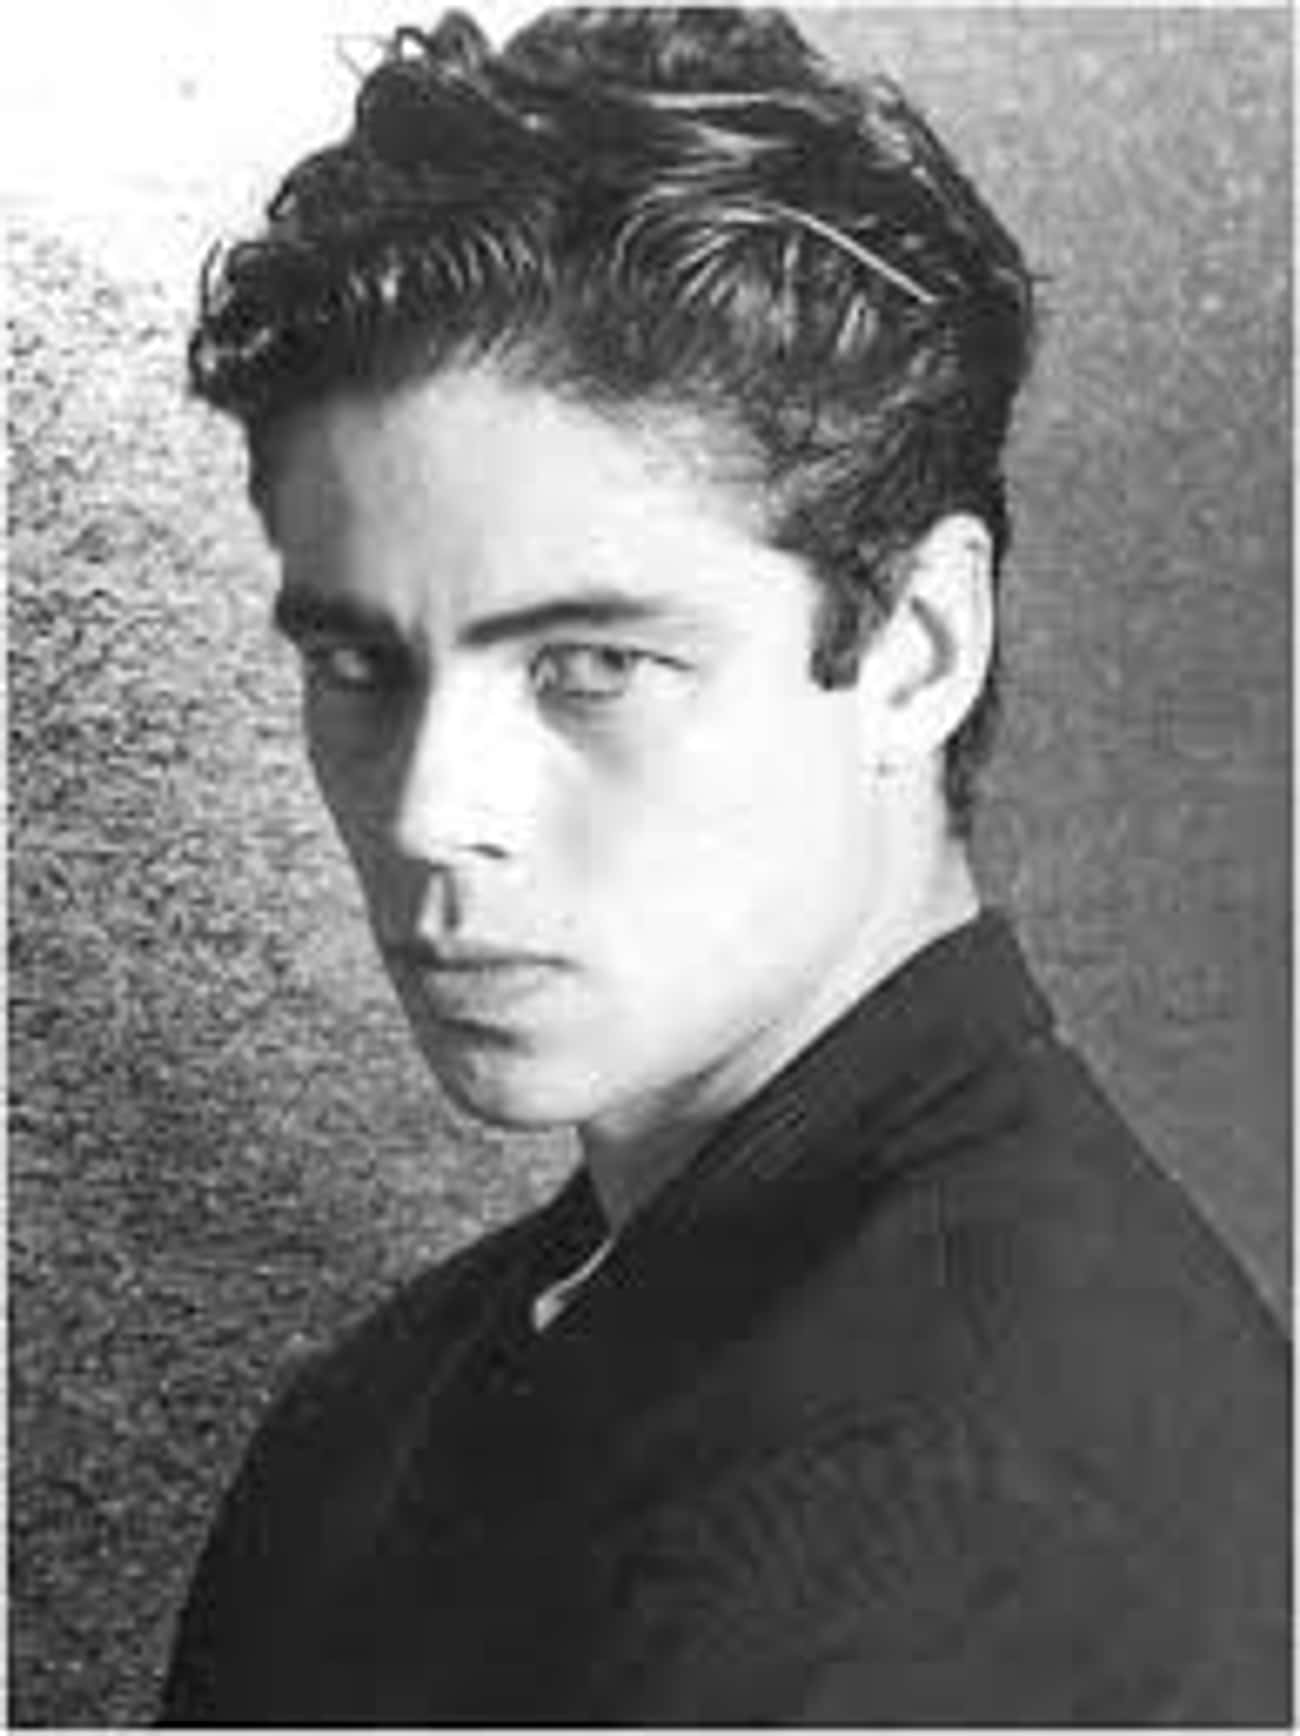 Young Benicio Del Toro in Black Buttondown